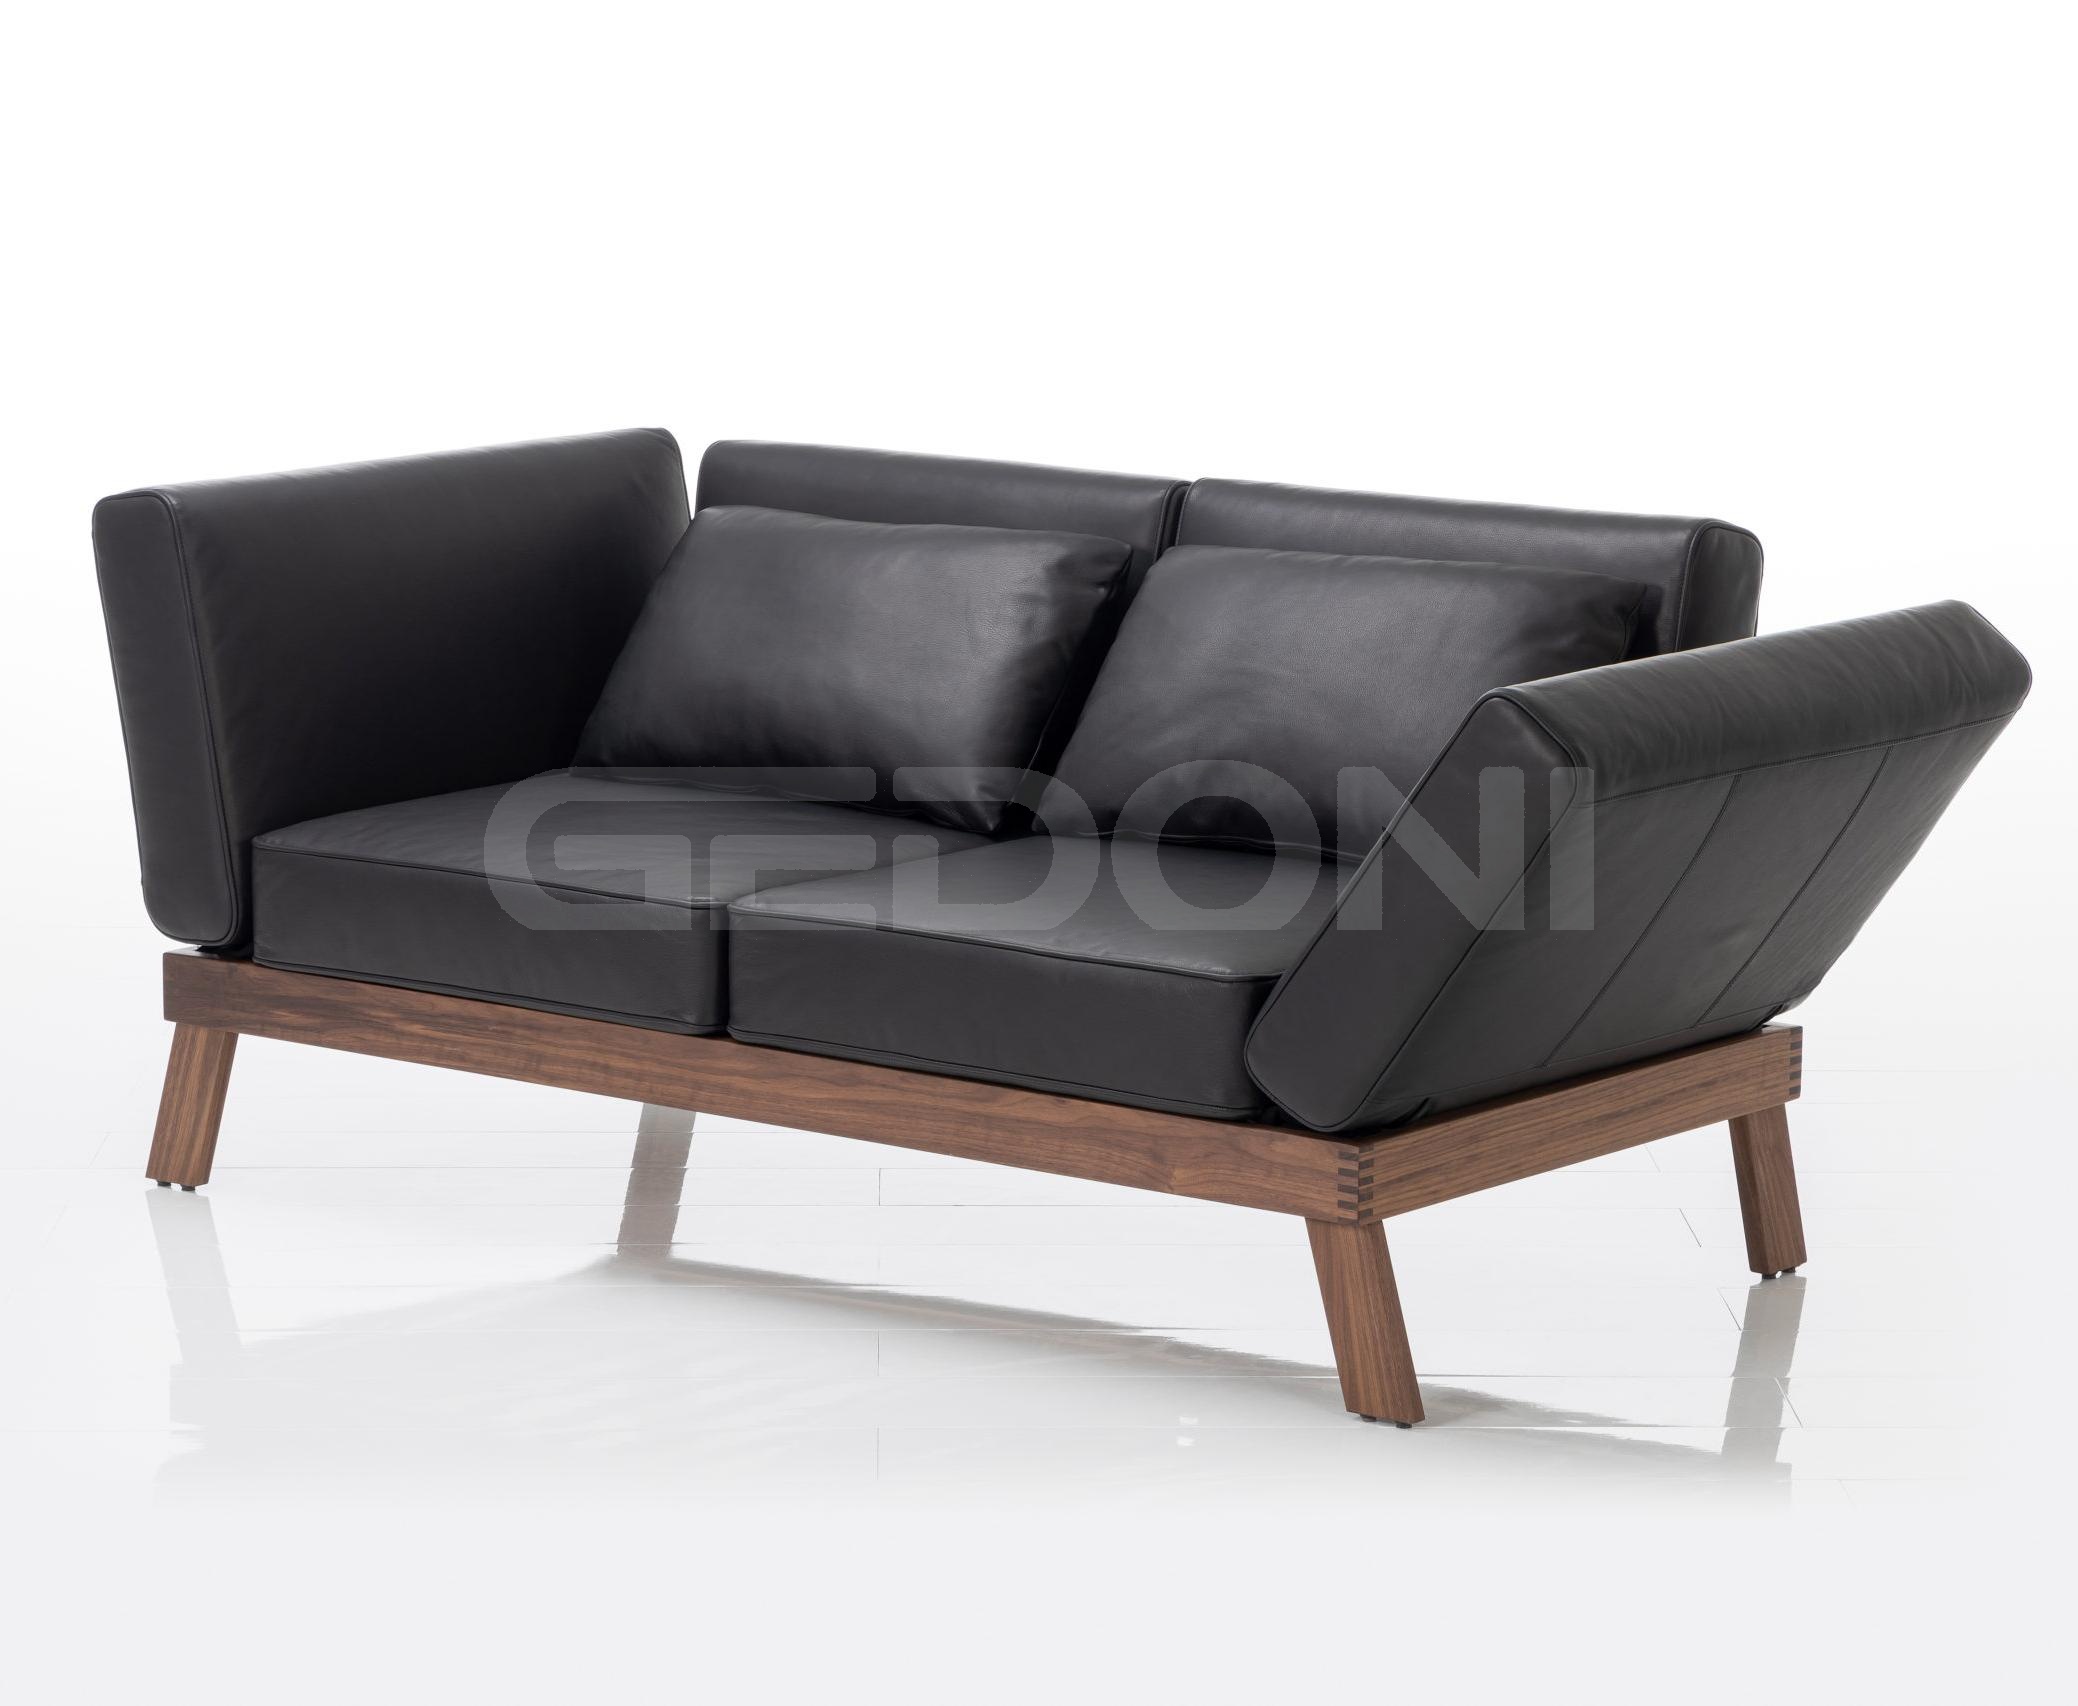 Новая коллекция мебели от немецких дизайнеров lofoten pure_4